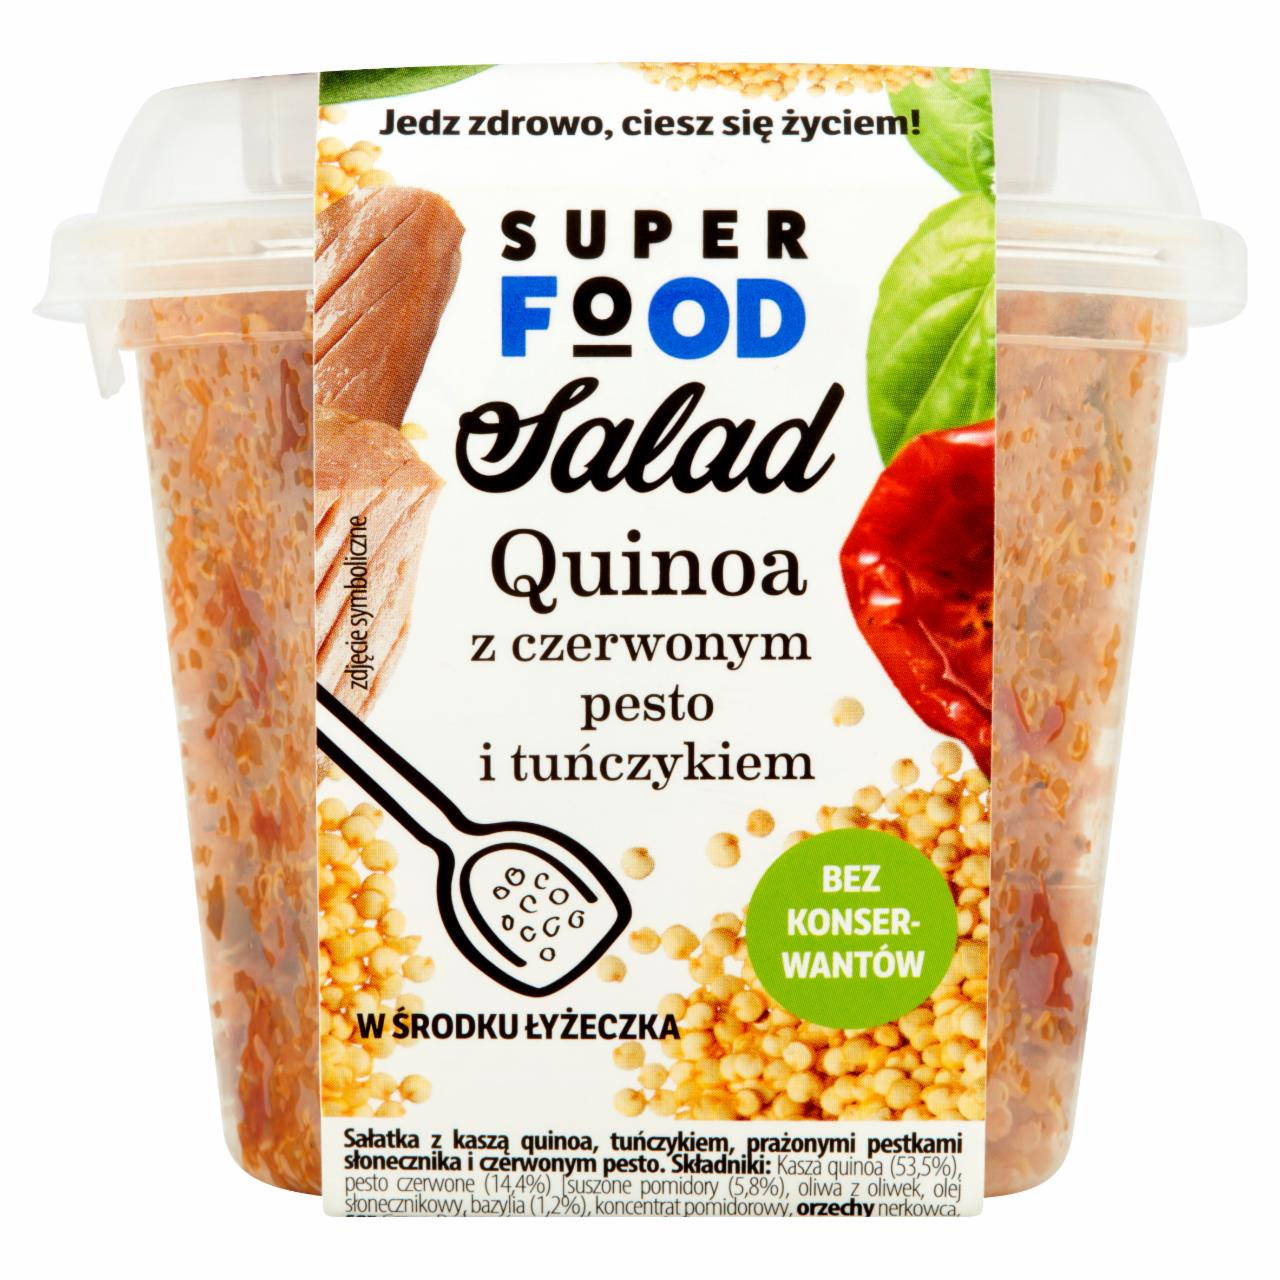 Zdjęcia - Super Food Salad Quinoa z czerwonym pesto i tuńczykiem 200 g